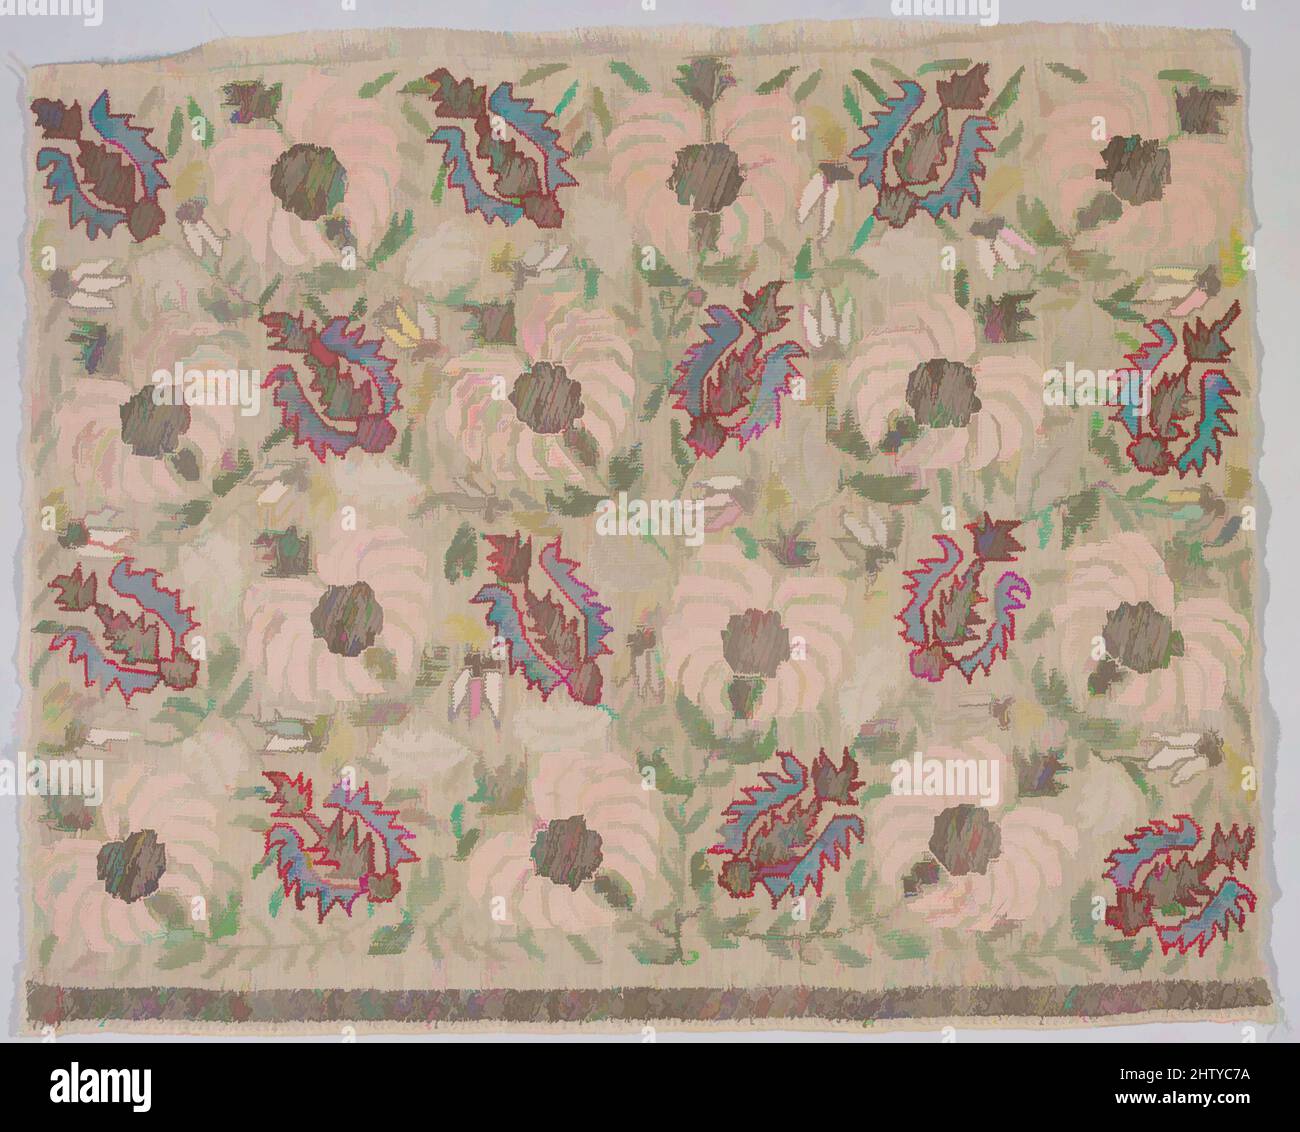 UNIF Stitch Bag Pattern- Heart  Cross stitch art, Cross stitch borders,  Cross stitch patterns